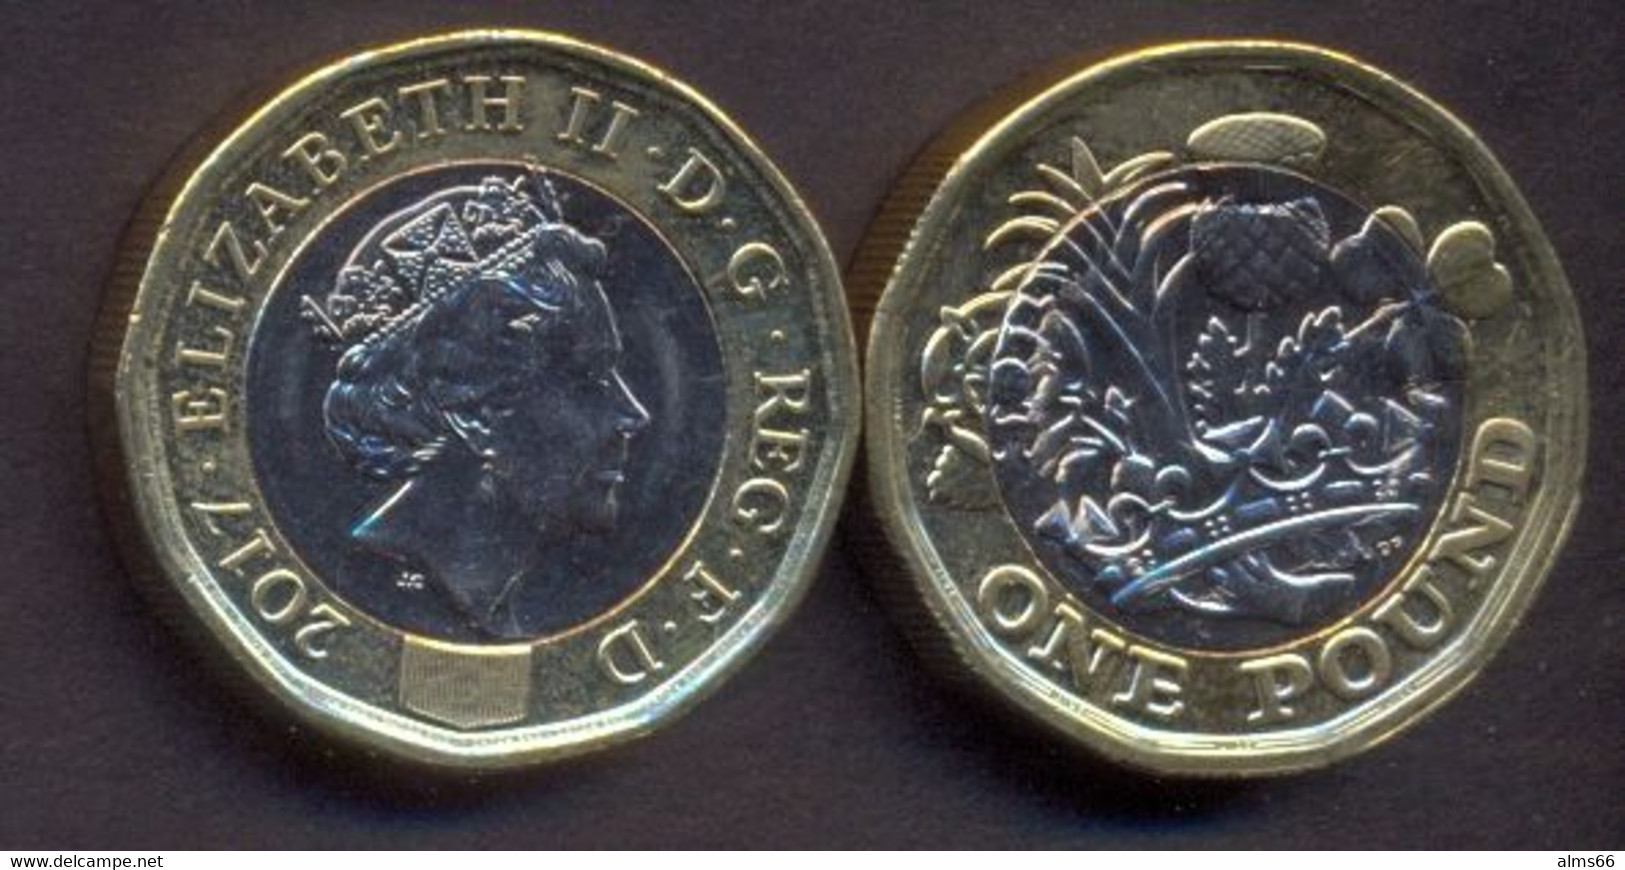 Great Britain UK 1 Pound 2017 UNC - 1 Pound